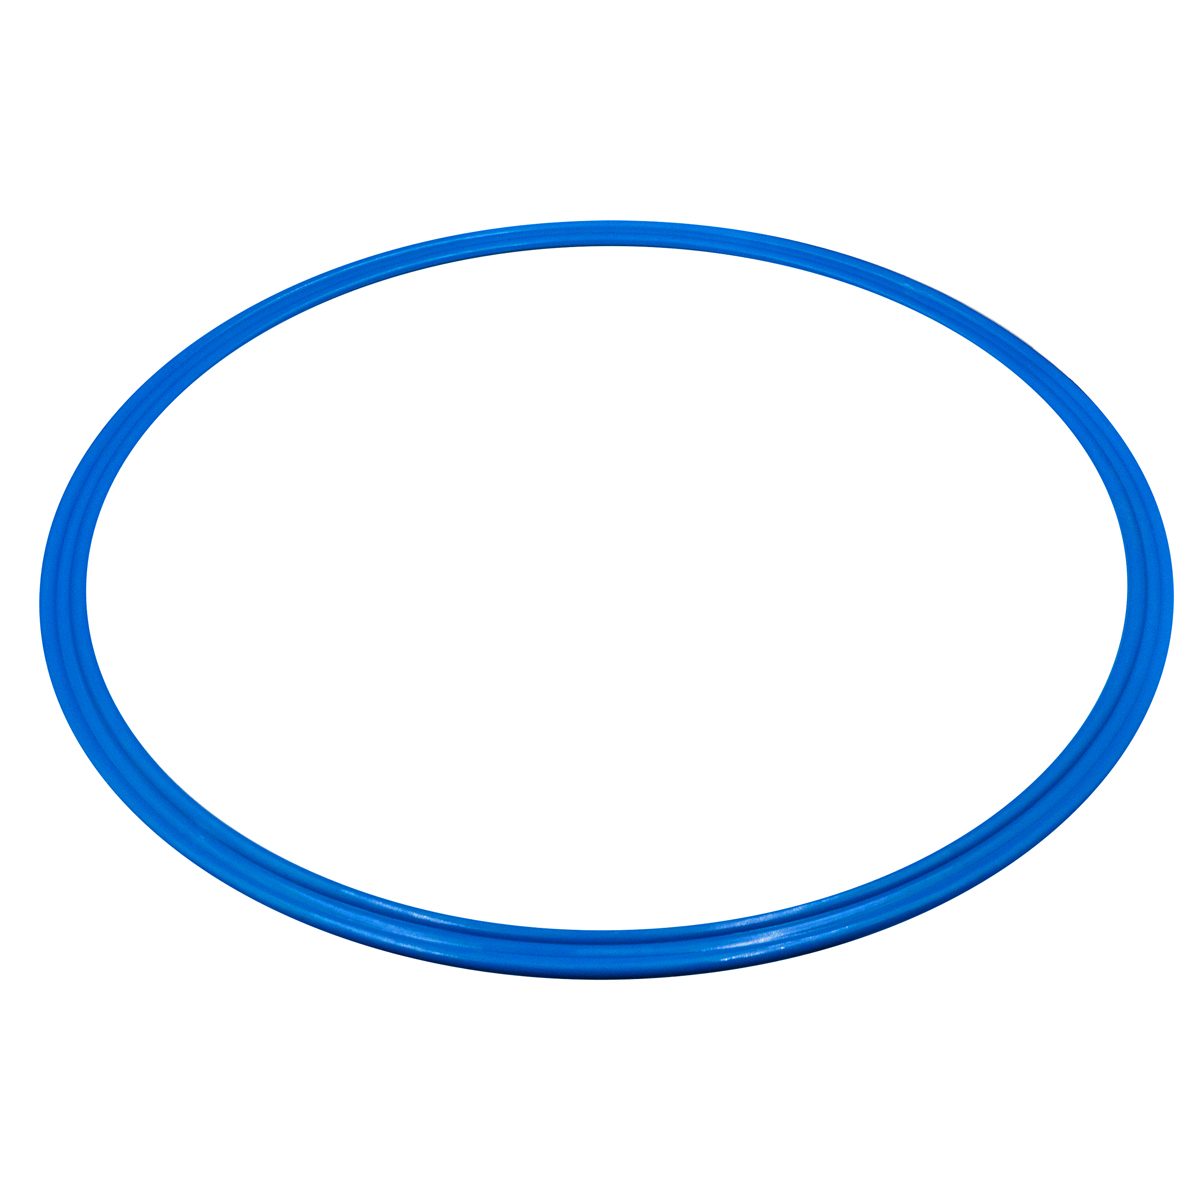 Arco De Agilidade De Plástico Plano Em Pvc Ø 40cm | Azul - azul - 